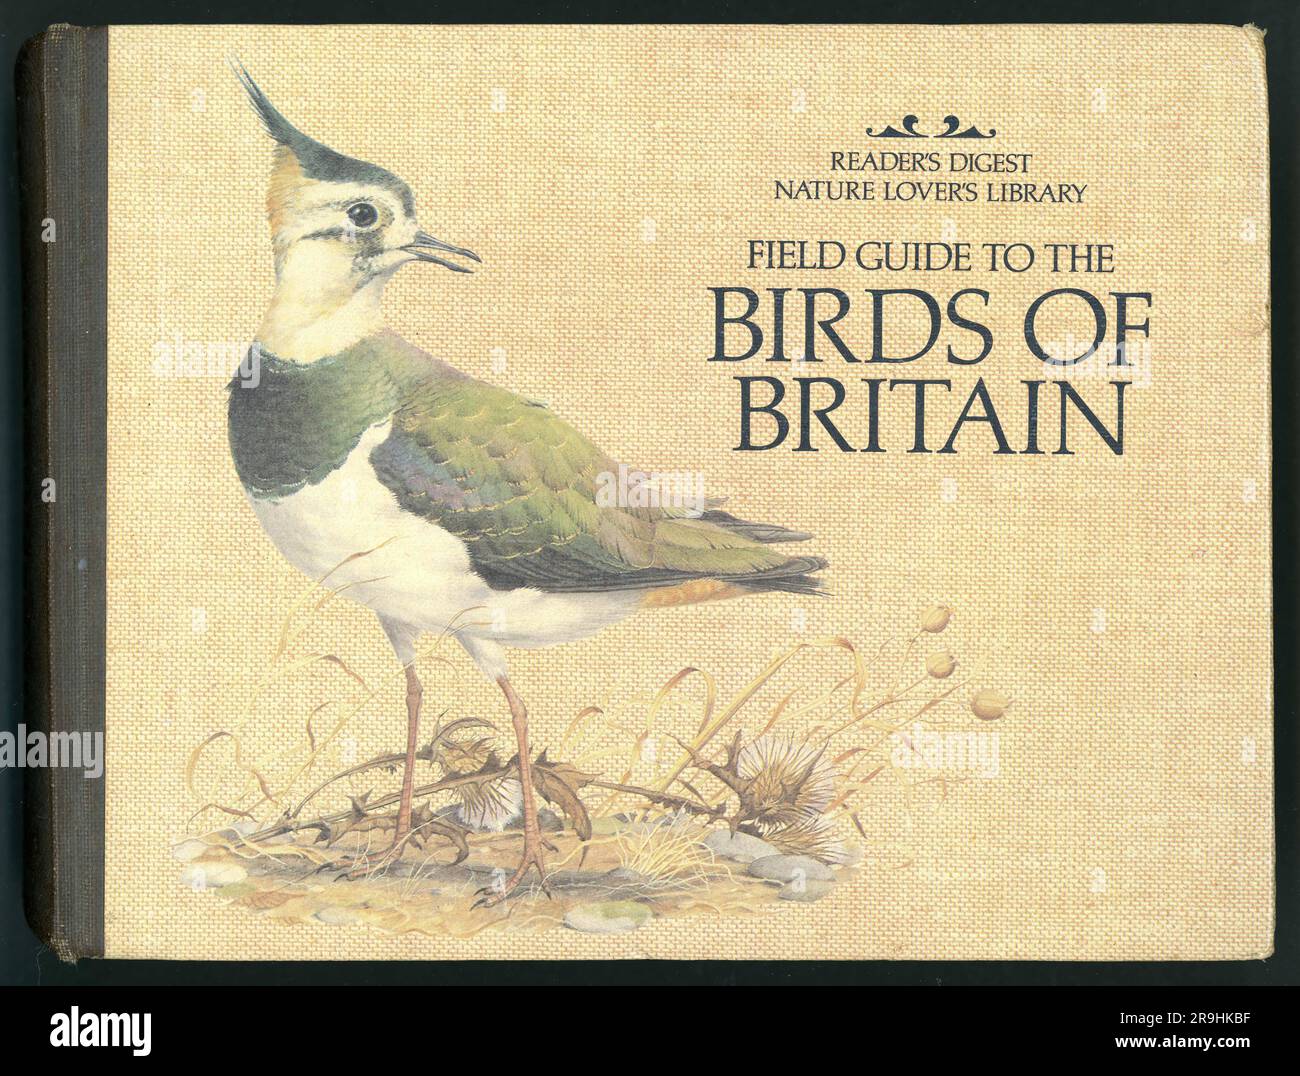 Copertina originale del libro del 1980 per il Reader's Digest Field Guide to the Birds of Britain, 1st Edition, copertina illustrata da Peter Barrett pubblicata nel 1981 Foto Stock